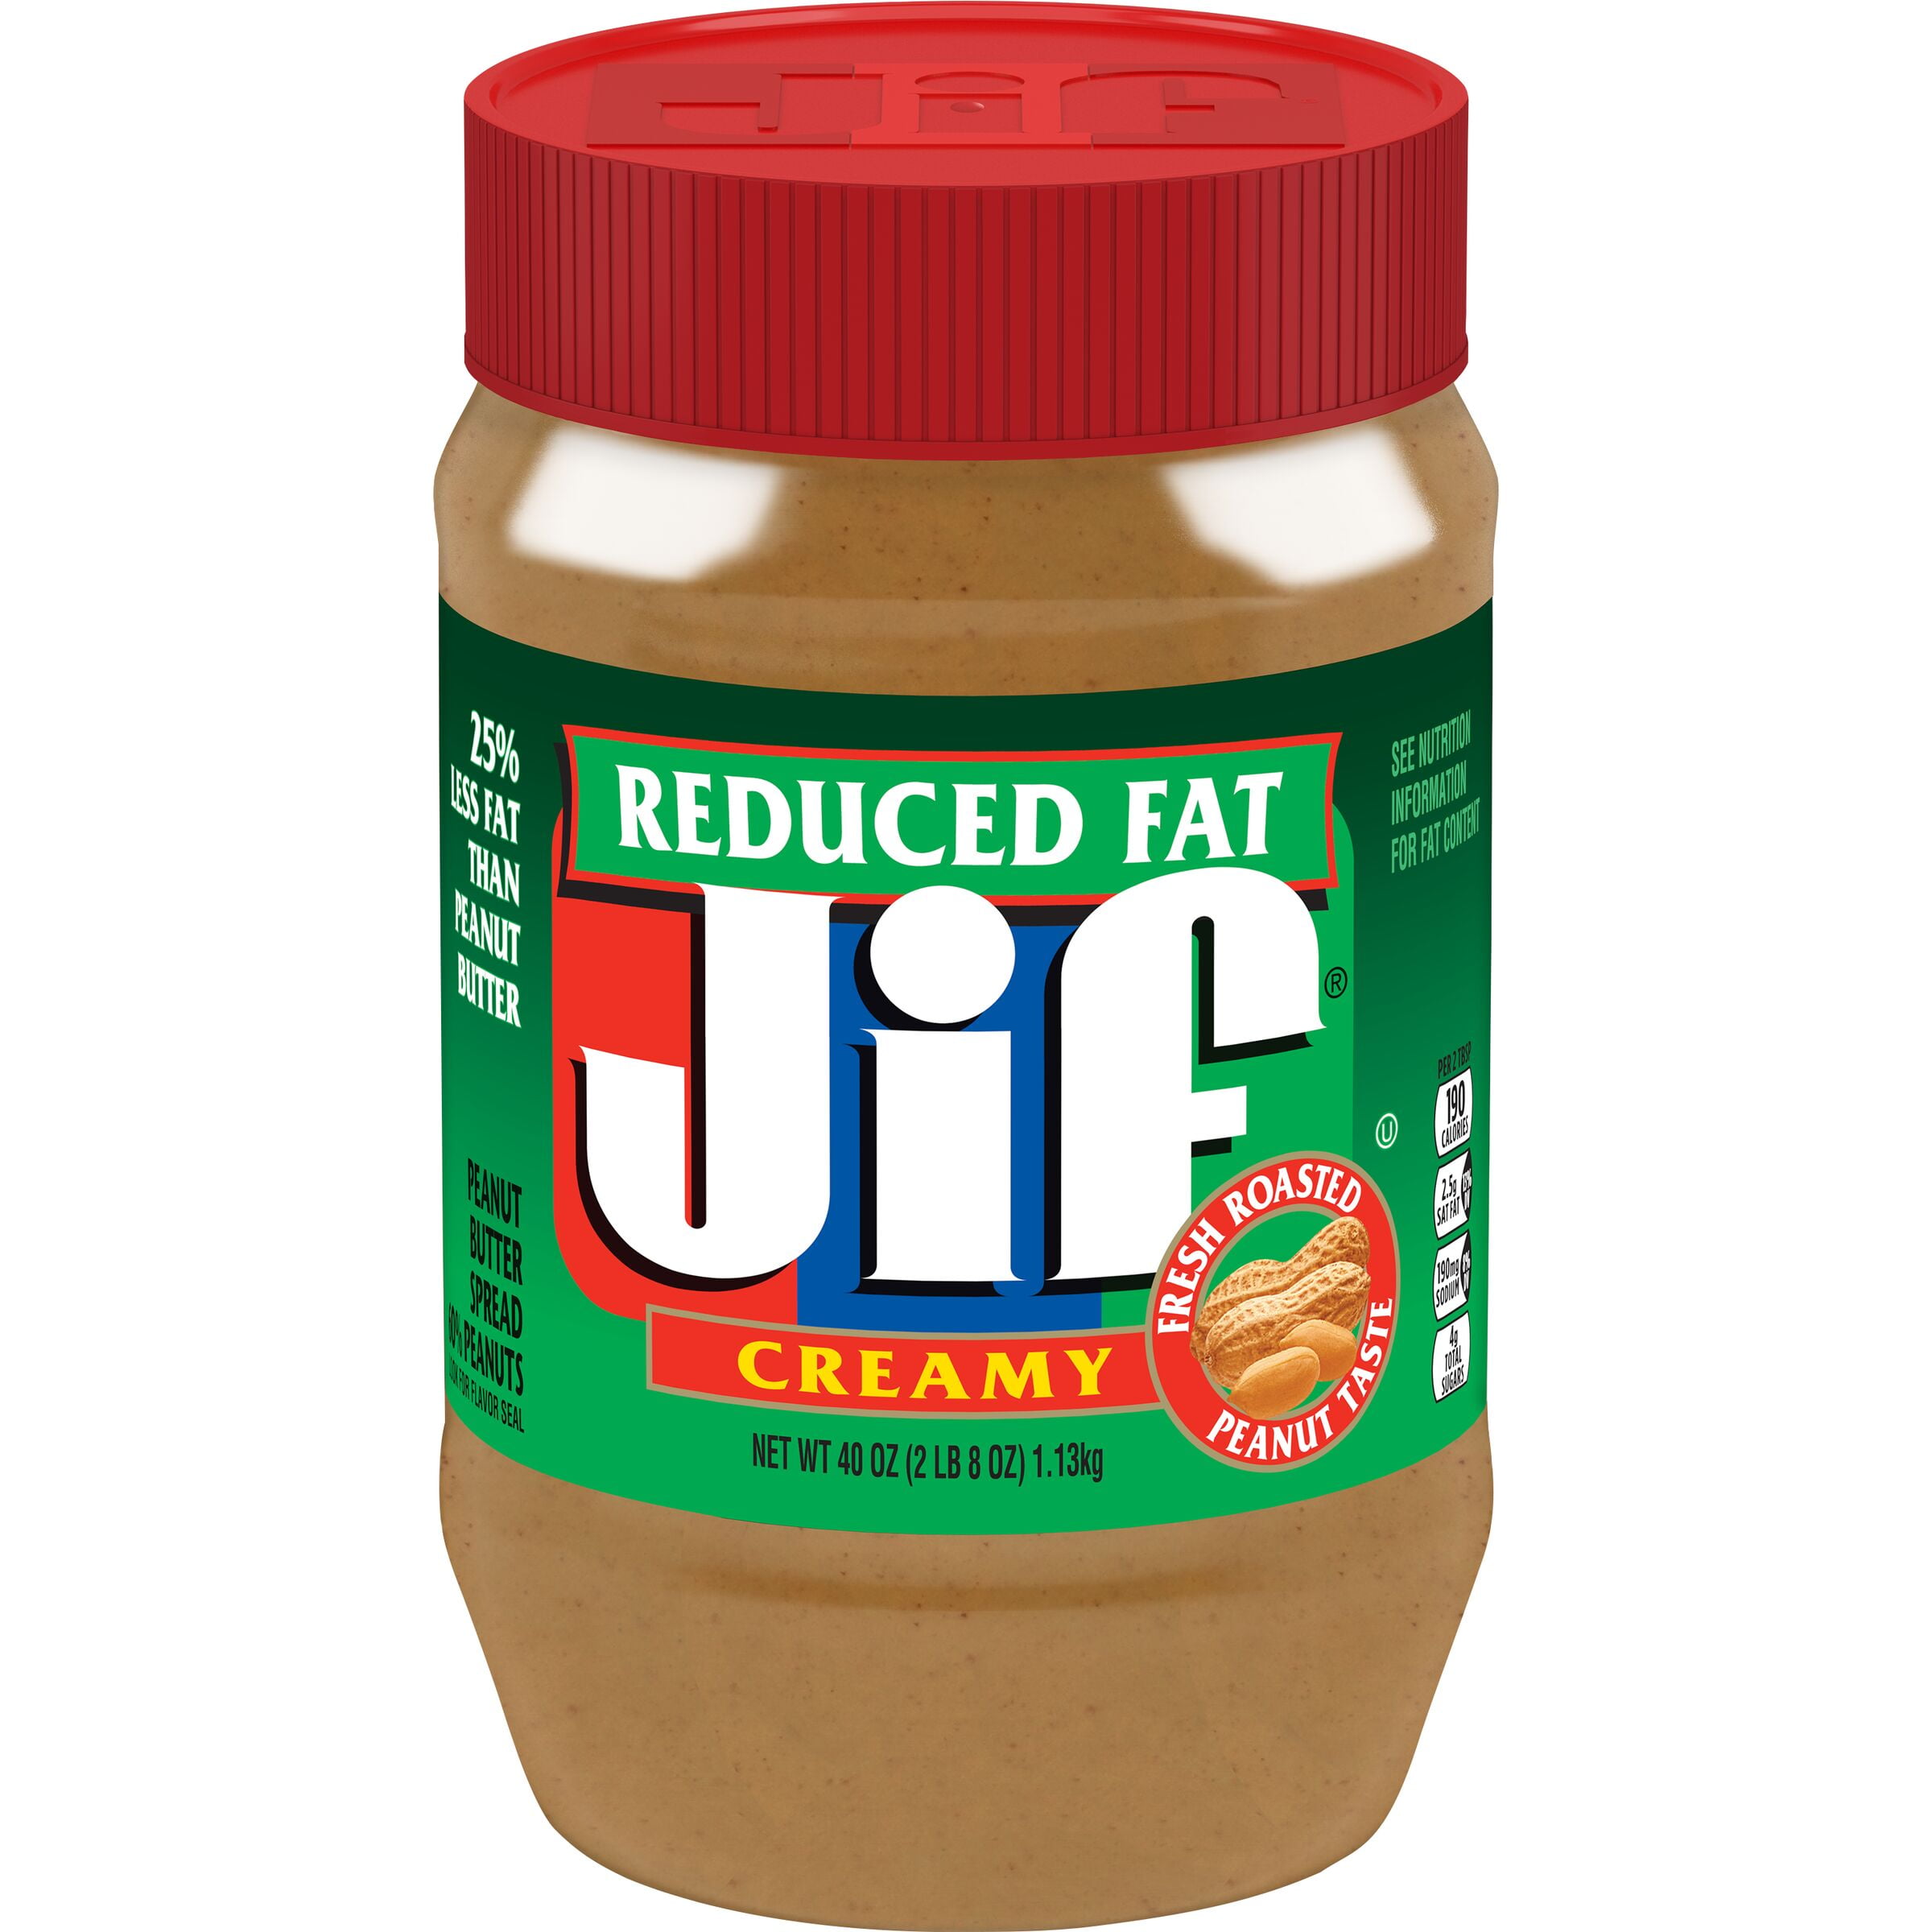 jif-reduced-fat-creamy-peanut-butter-spread-60-peanuts-40-ounces